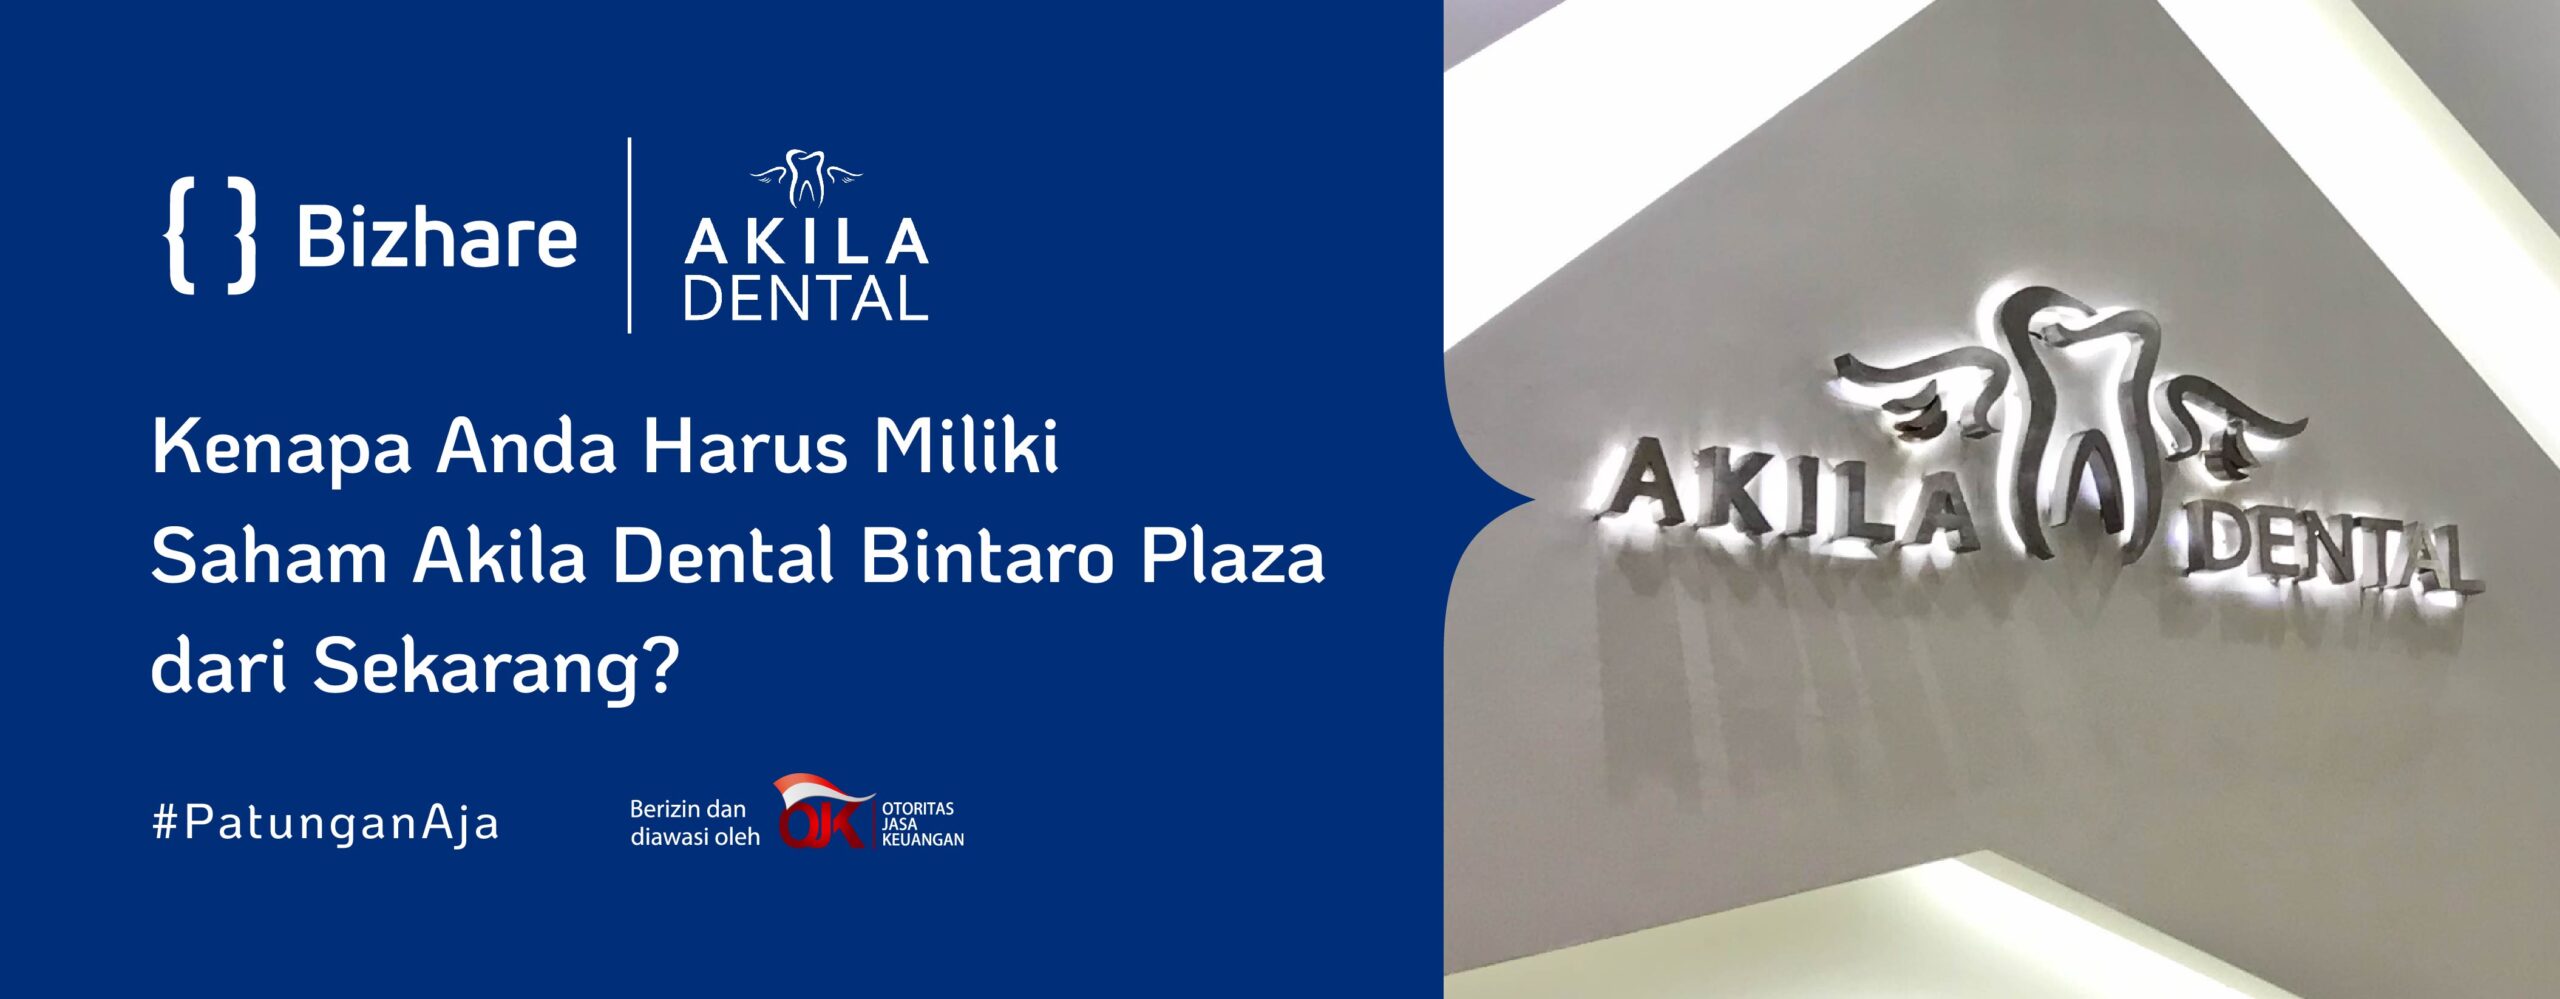 Akila Dental Bintaro Plaza